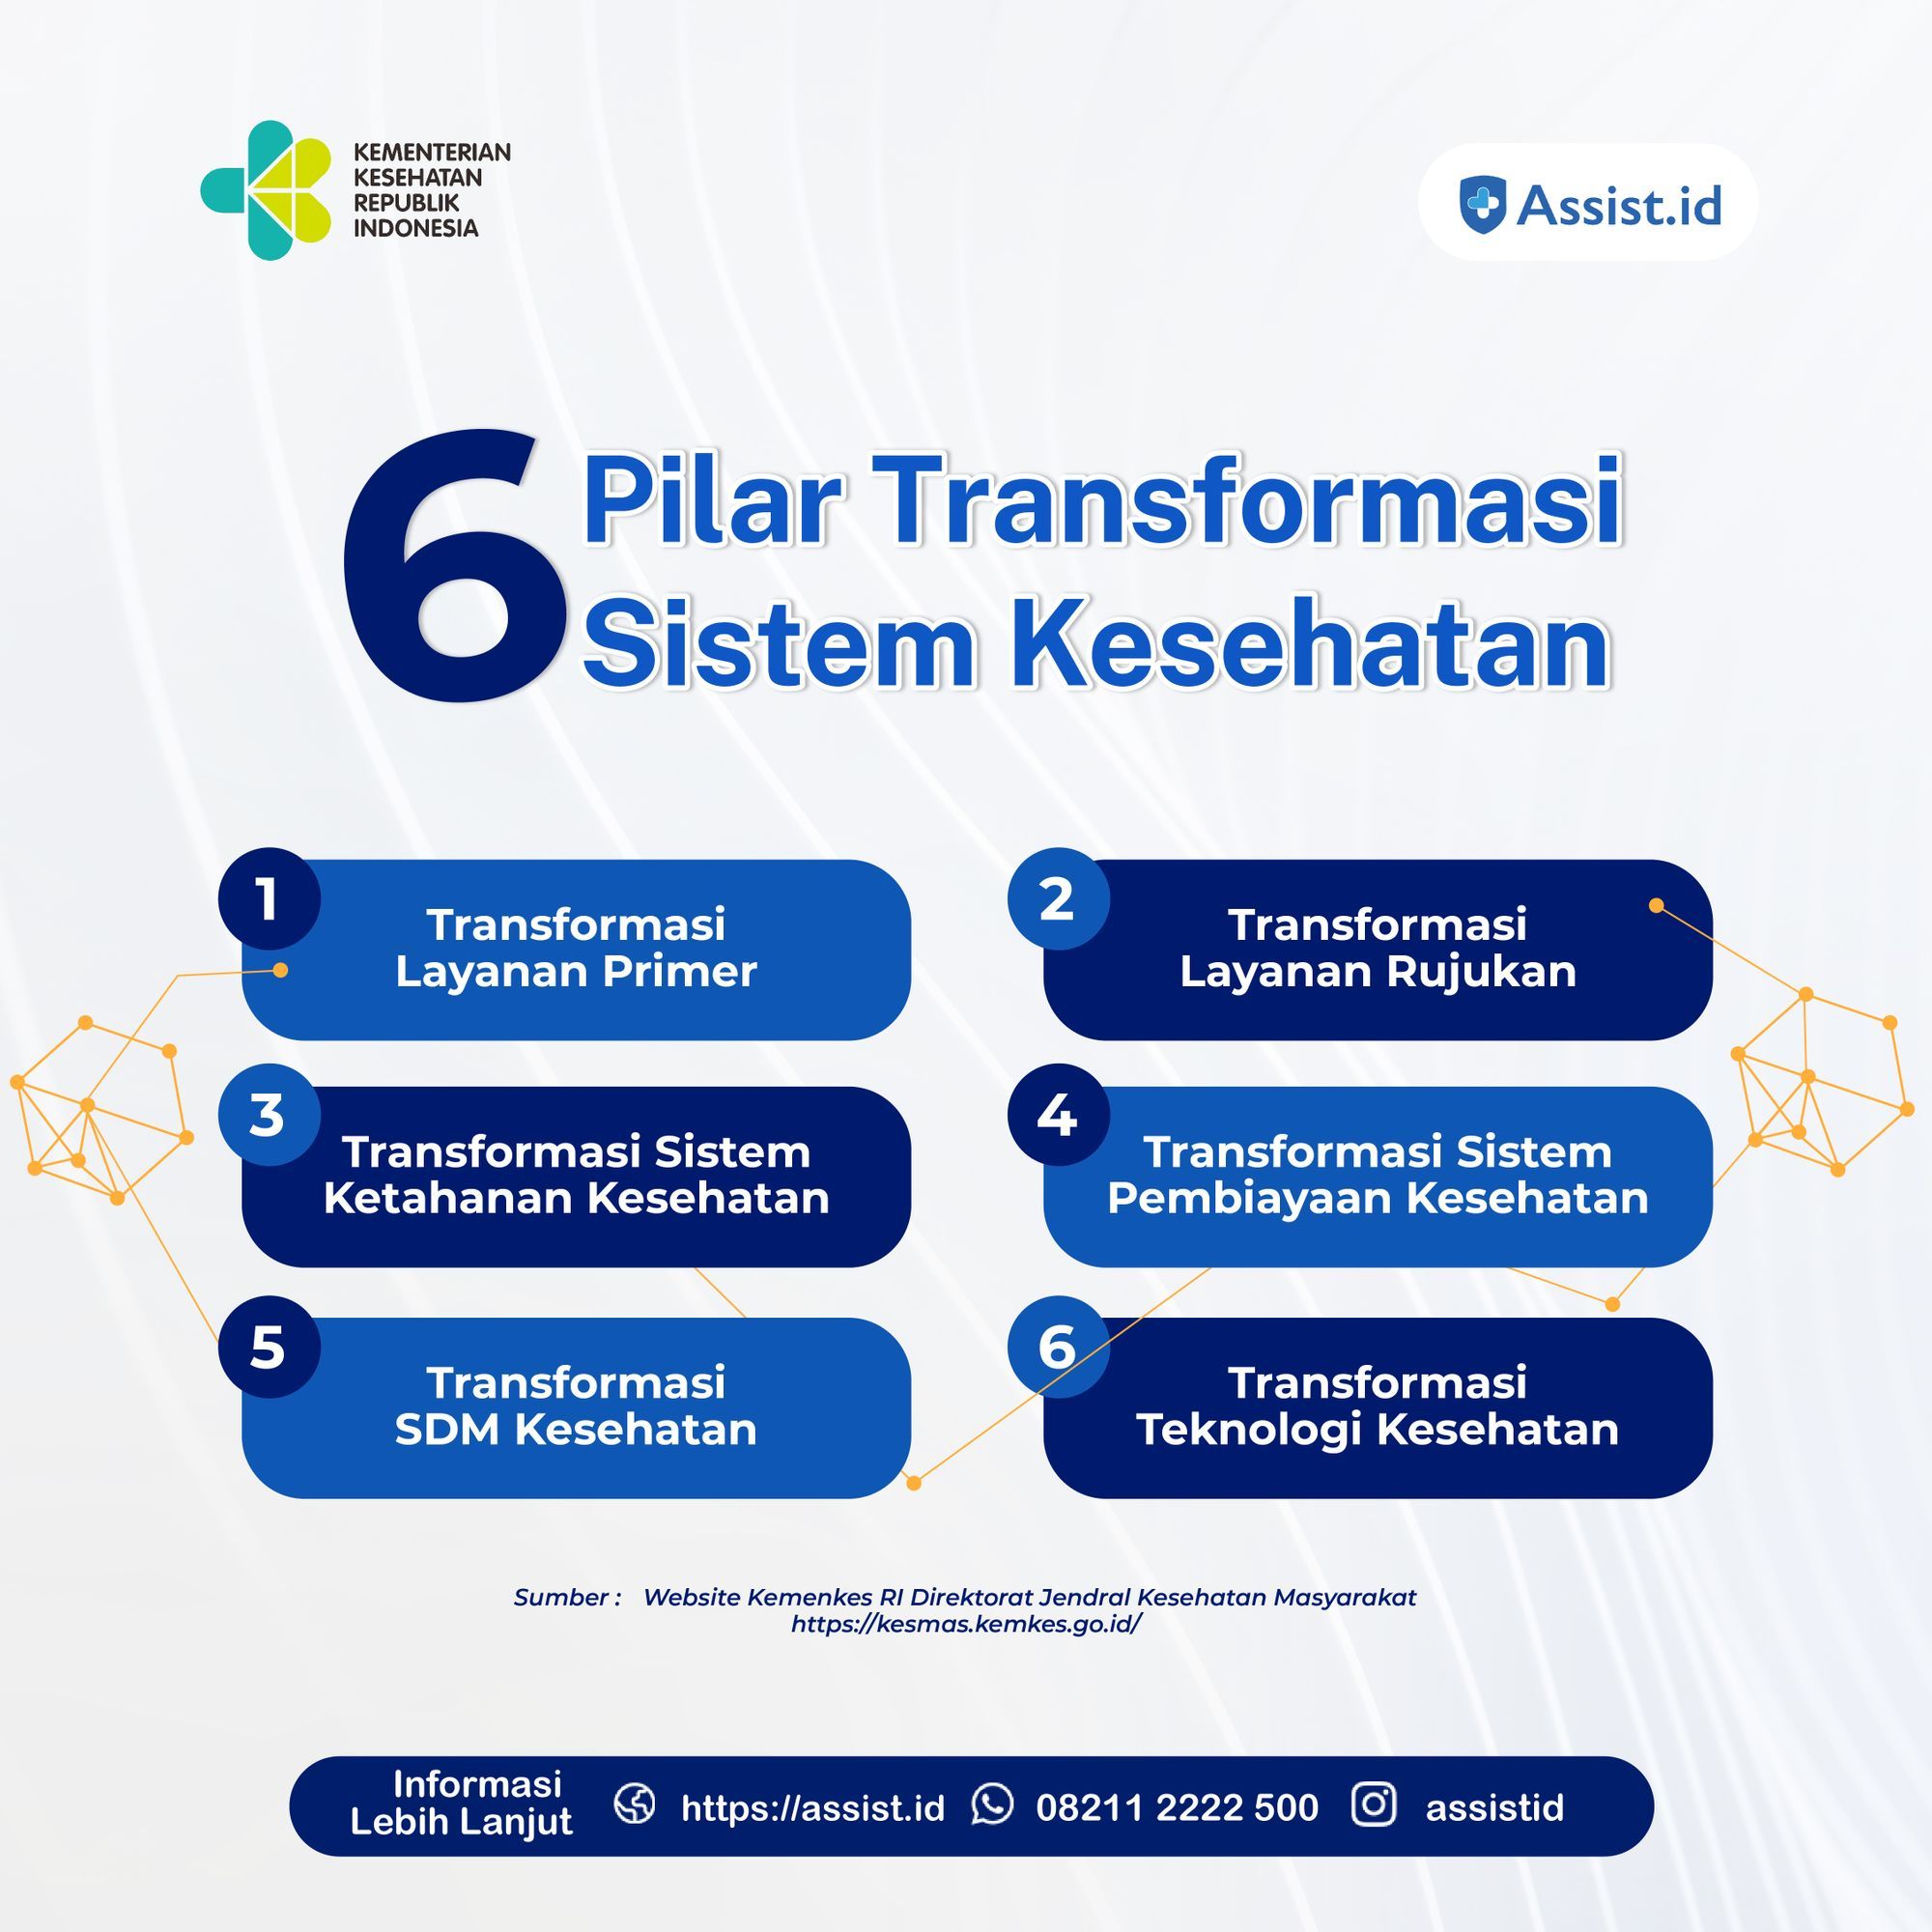 Assist.id Dukung Implementasi 6 Pilar Transformasi Sistem Kesehatan